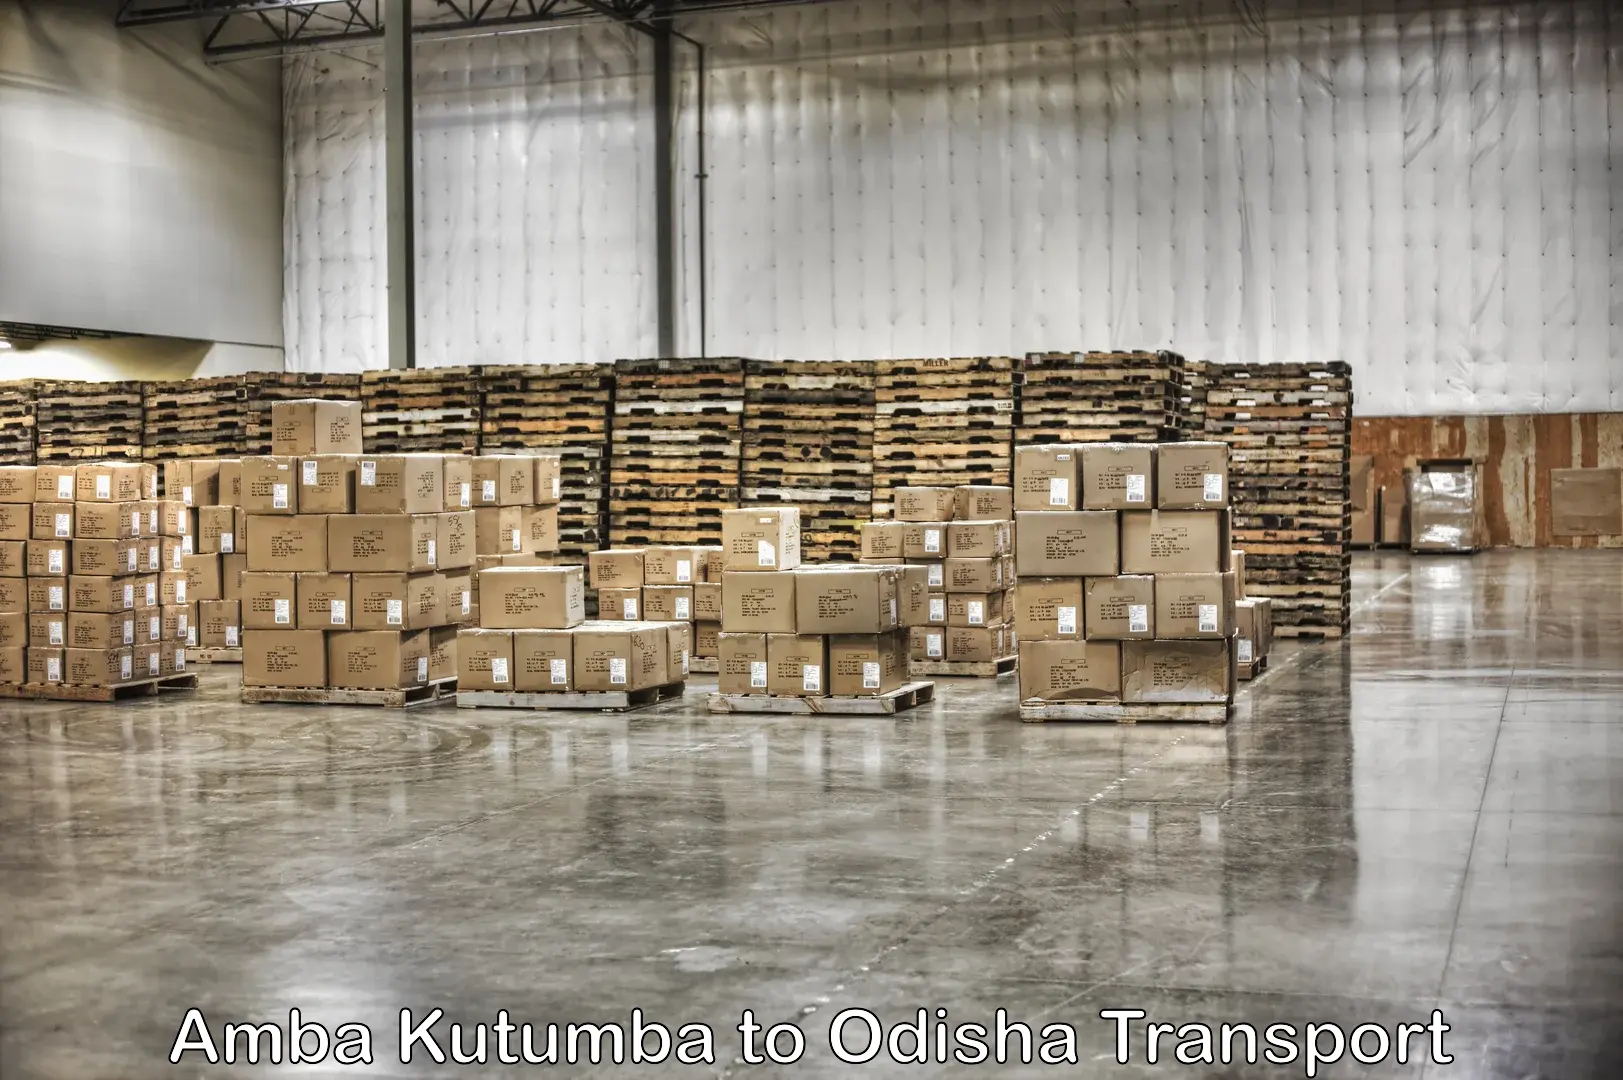 Truck transport companies in India Amba Kutumba to Chandinchowk